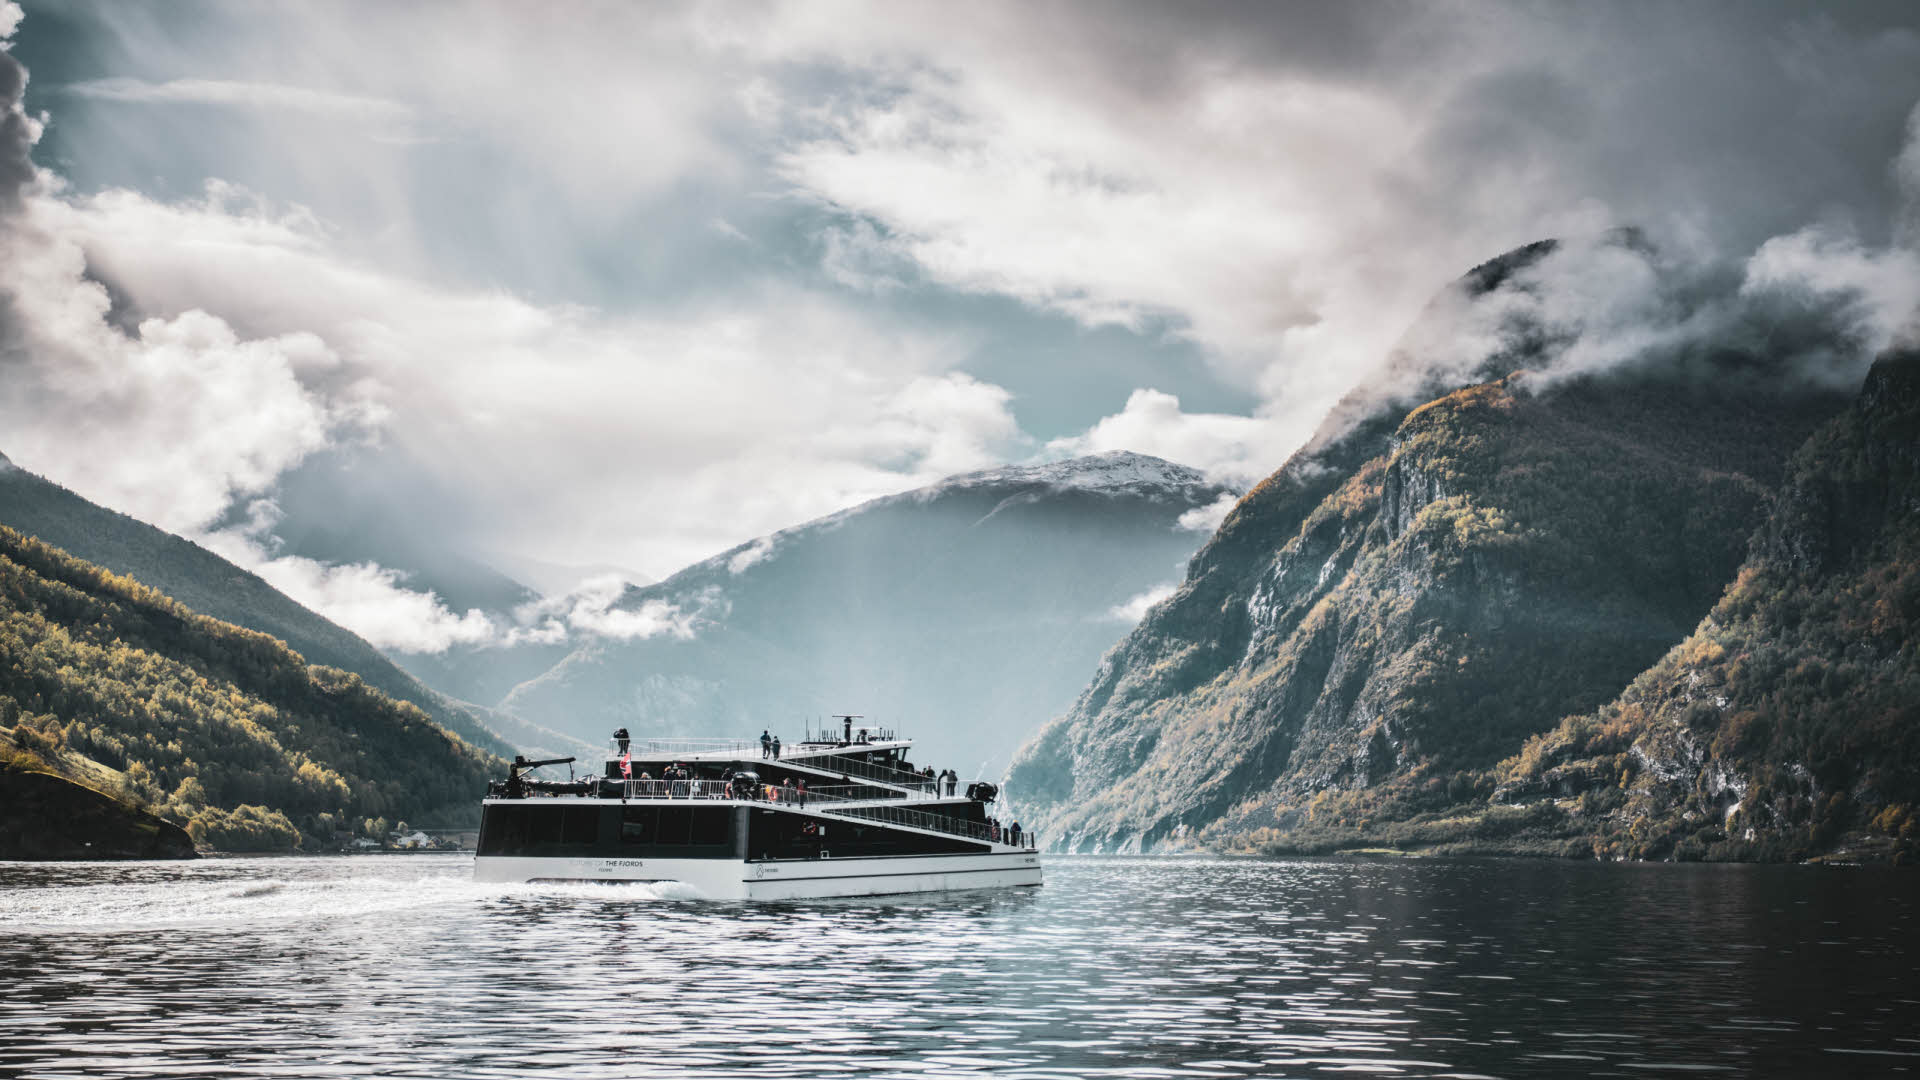 La embarcación eléctrica «Future of The Fjords» navega por el tranquilo Nærøyfjord, incluido en la lista de Patrimonio de la Humanidad de la Unesco, durante un soleado día de otoño